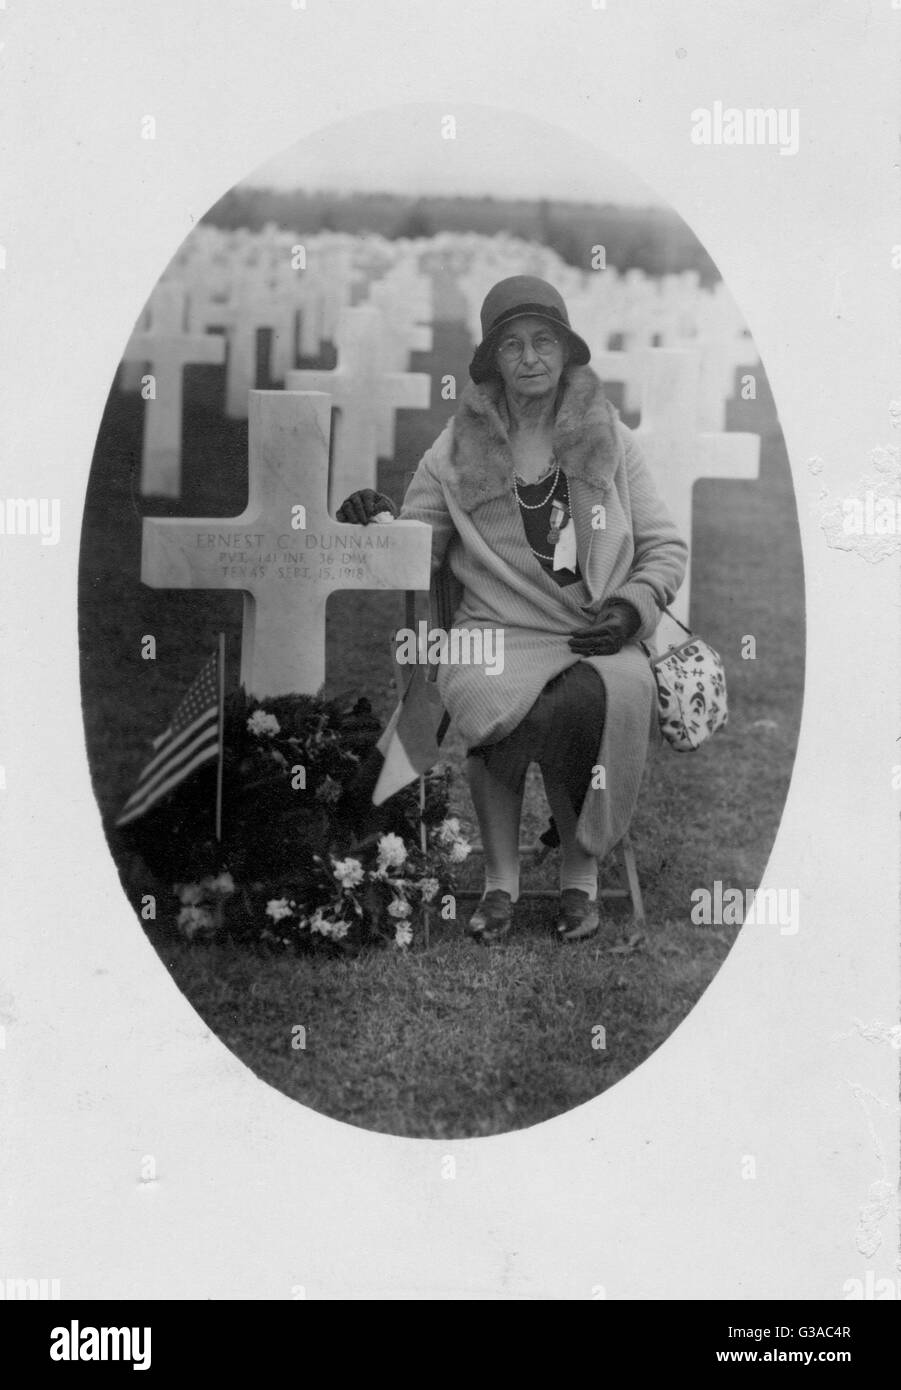 Mary Carlotta Dunnam, besucht auf einem Gold Star Mütter und Witwen Pilgrimage, das Grab ihres Sohnes, Ernest C. Dunnam, getötet in Aktion in Frankreich am 15. September 1918. St. Mihiel Friedhof, France, August 1930. Stockfoto